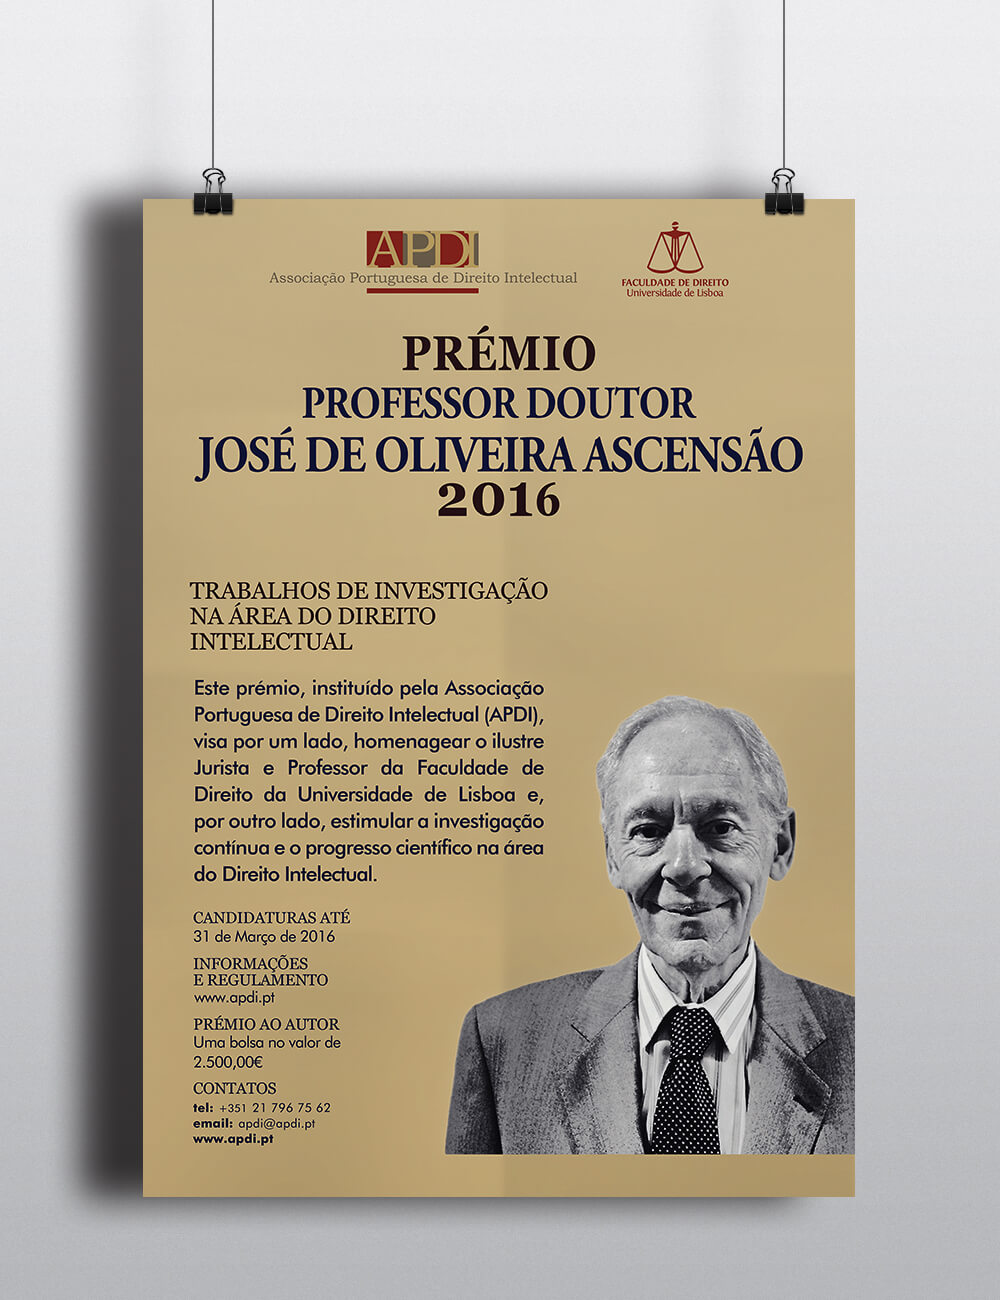 PRÉMIO PROFESSOR DOUTOR JOSÉ DE OLIVEIRA ASCENSÃO 2016